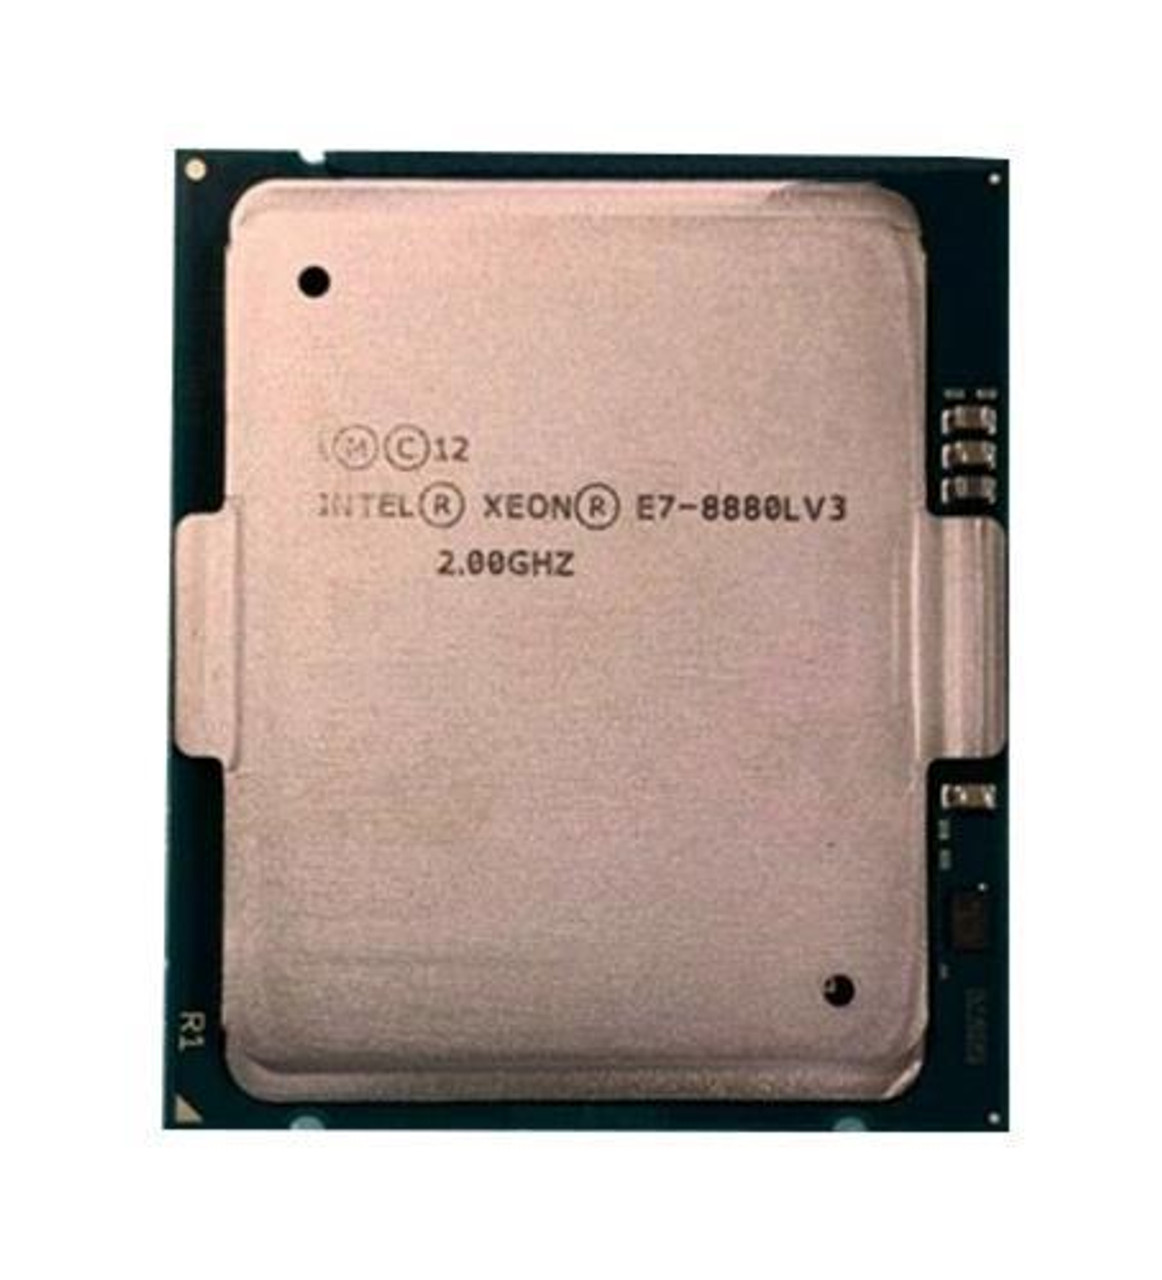 Lenovo 2.00GHz 9.60GT/s QPI 45MB L3 Cache Socket LGA2011-1 Intel Xeon E7-8880L v3 18-Core Processor Upgrade